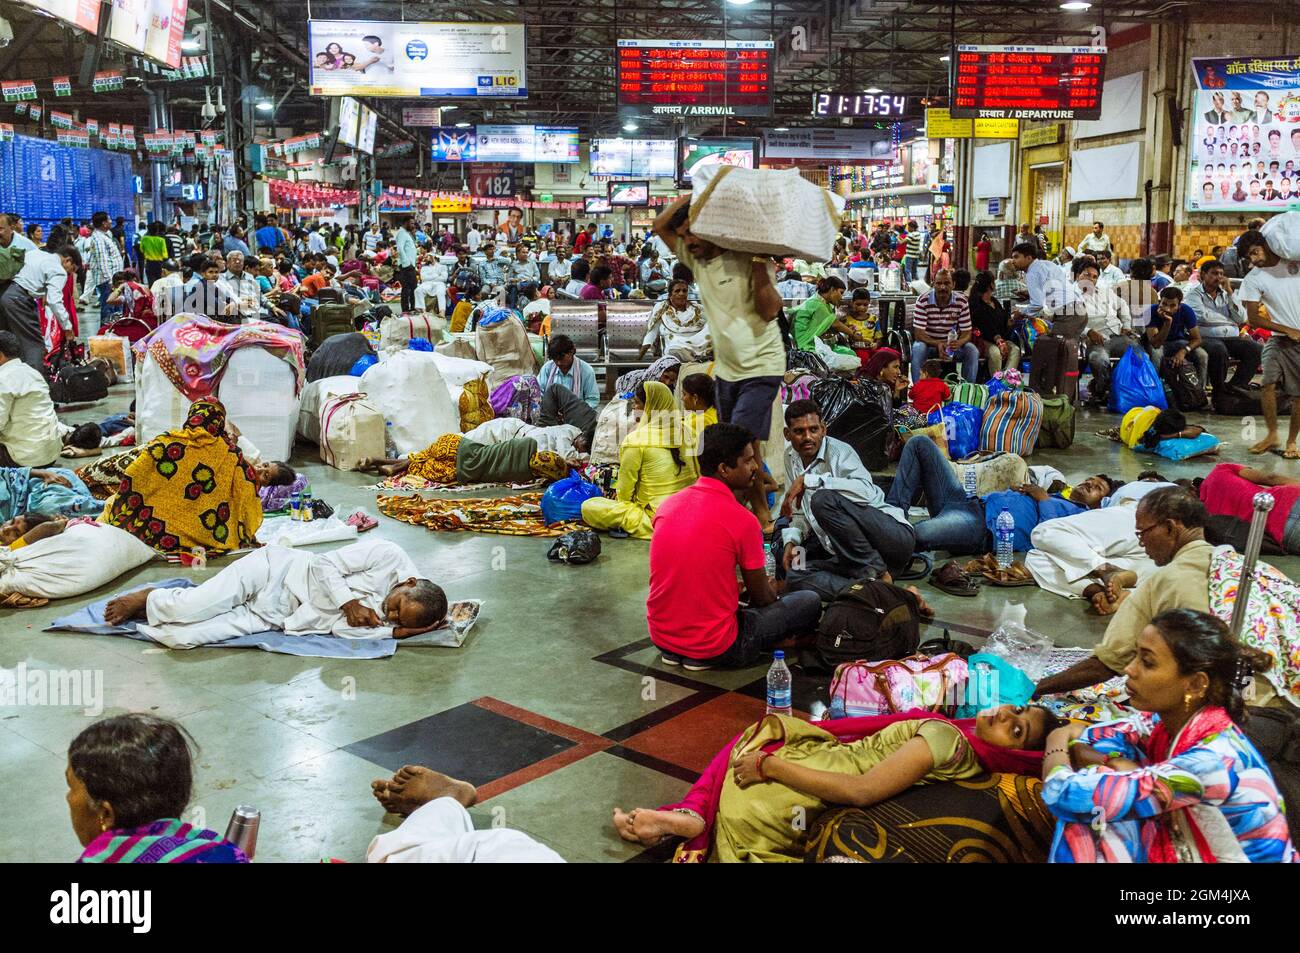 Mumbai, Maharashtra, Inde : les voyageurs attendent leurs trains à l'intérieur de la gare Chhatrapati Shivaji Terminus (anciennement Victoria Terminus) Banque D'Images